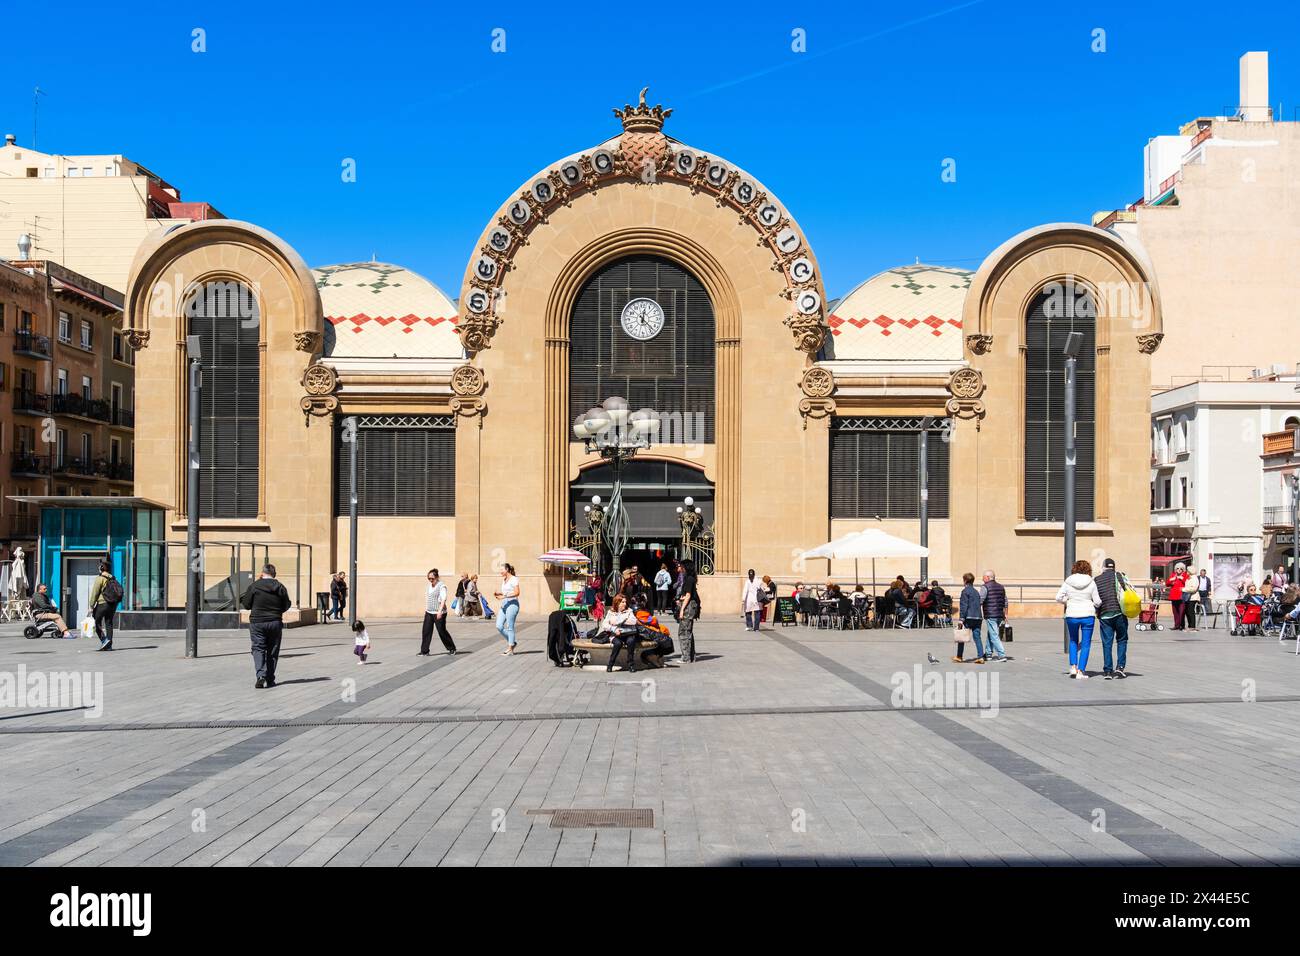 Mercat Central de Tarragona, marché central au soleil à Tarragone, Espagne Banque D'Images